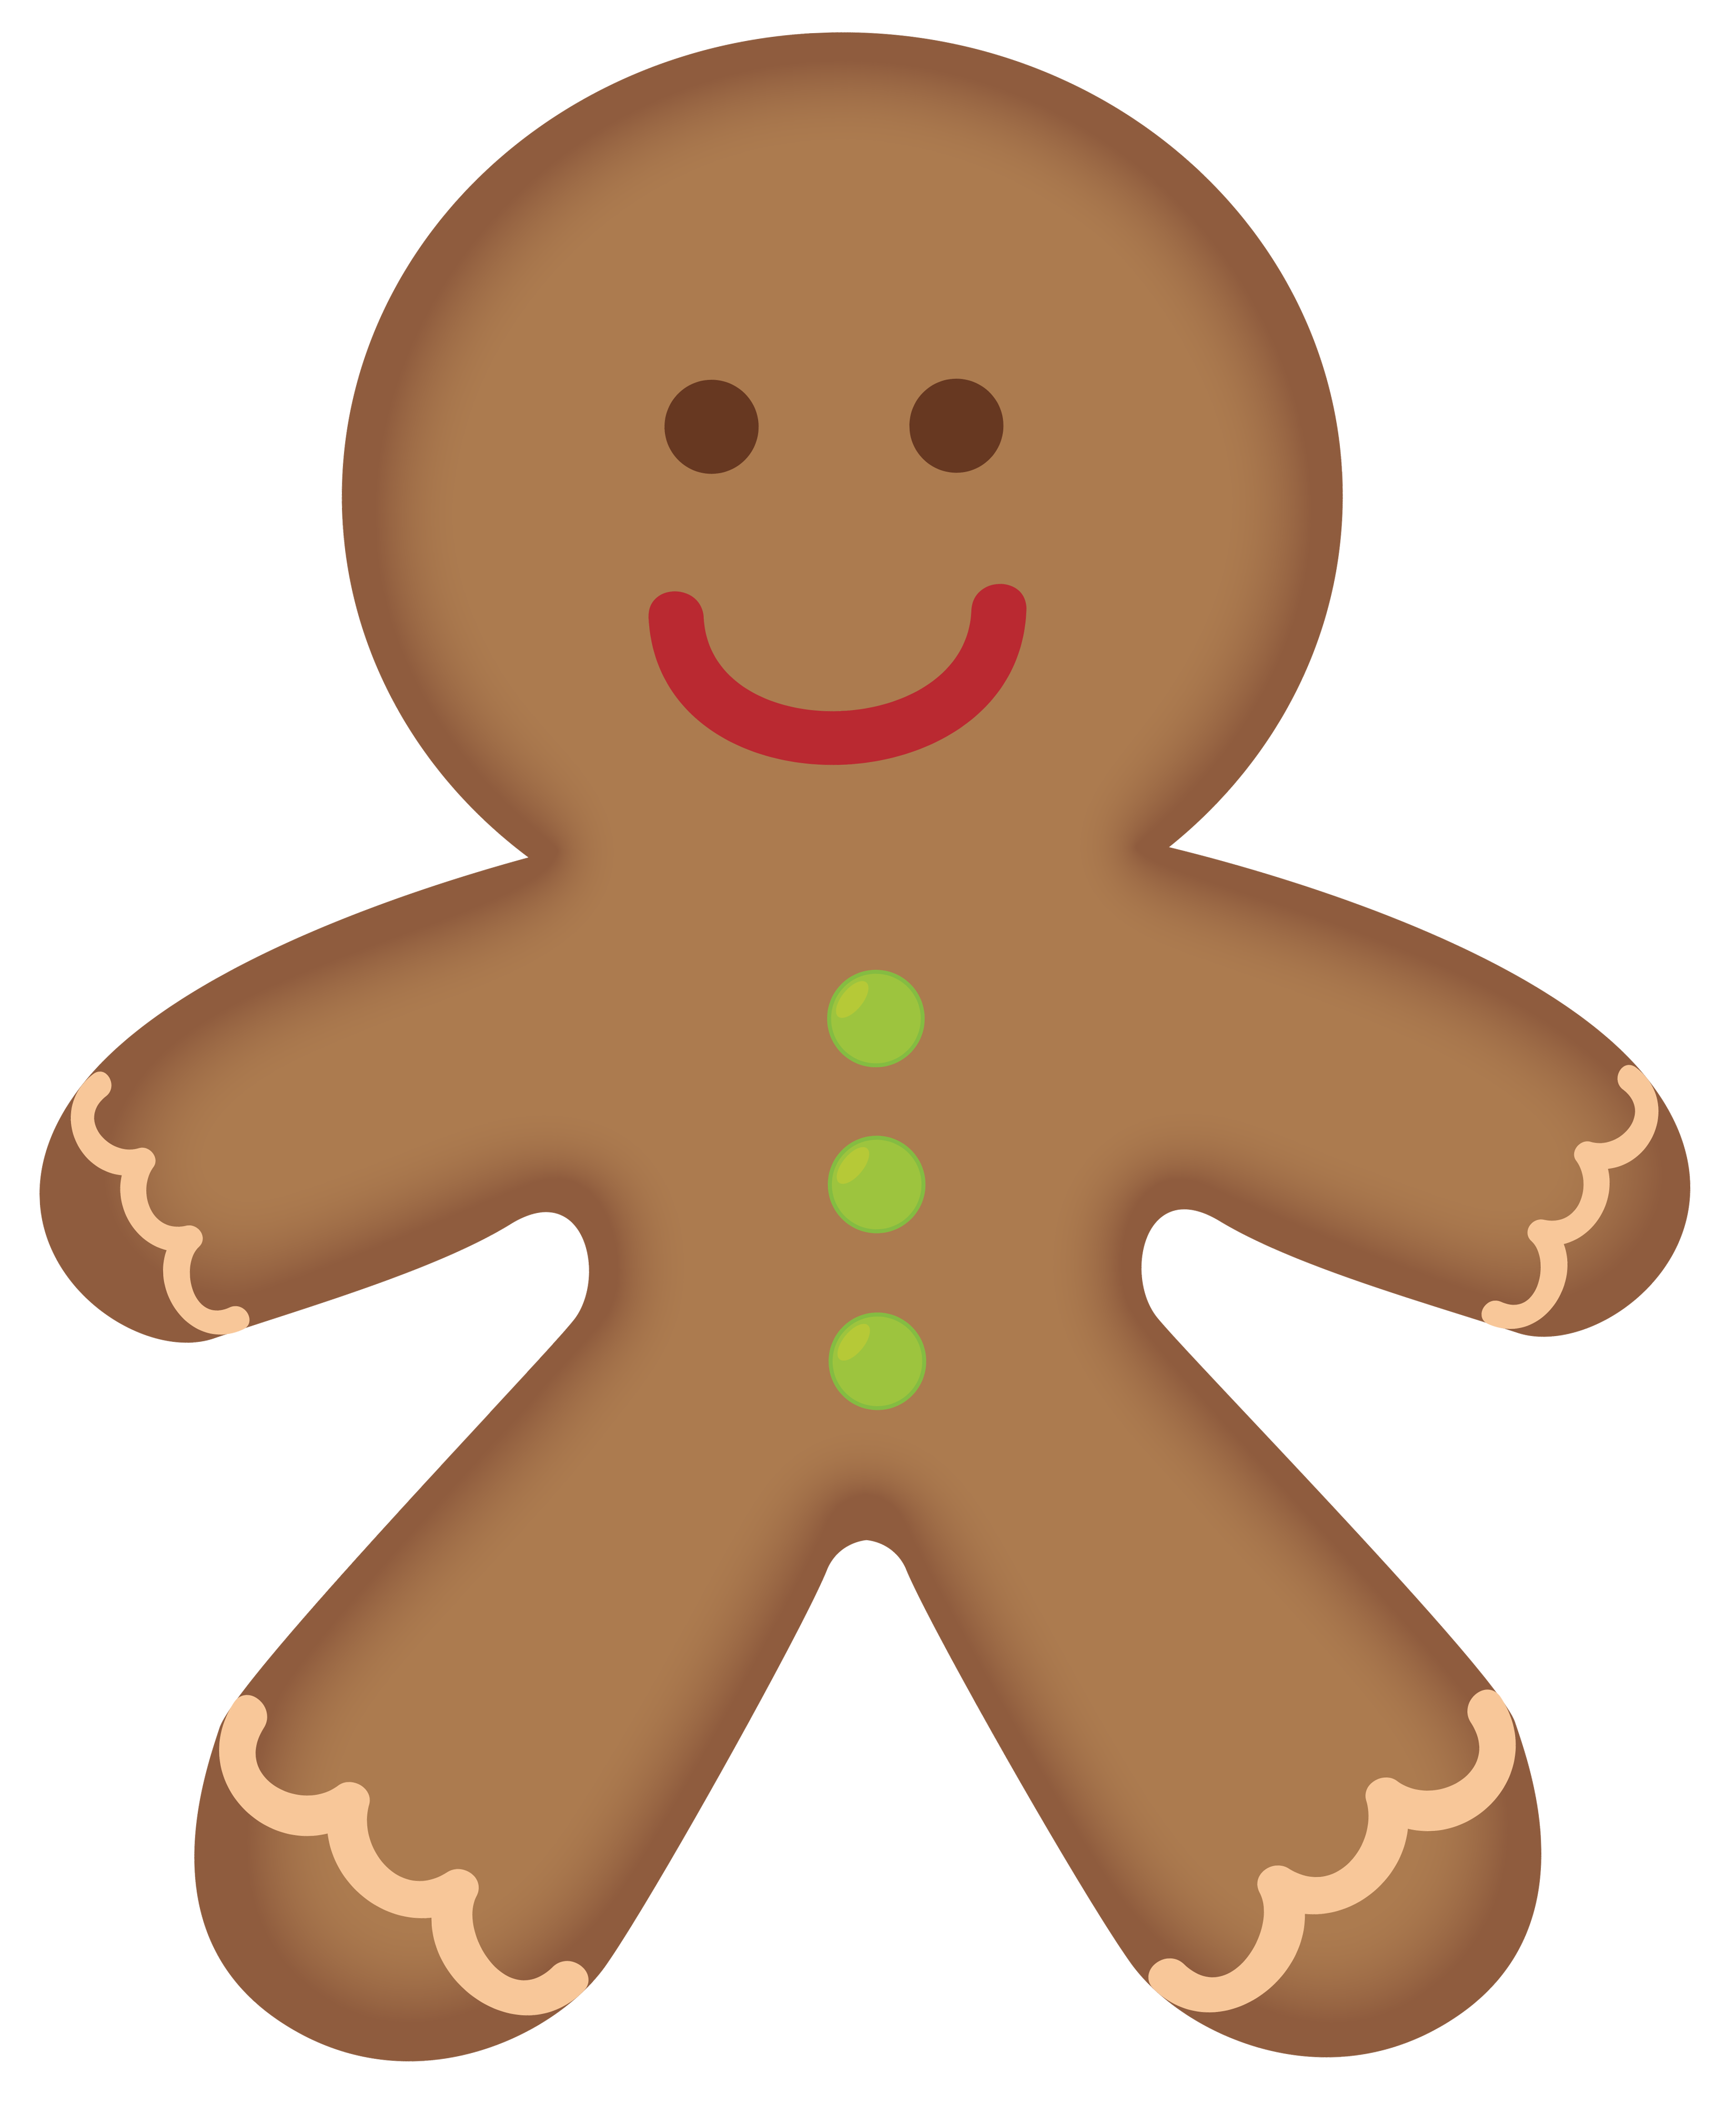 Gingerbread Clip Art